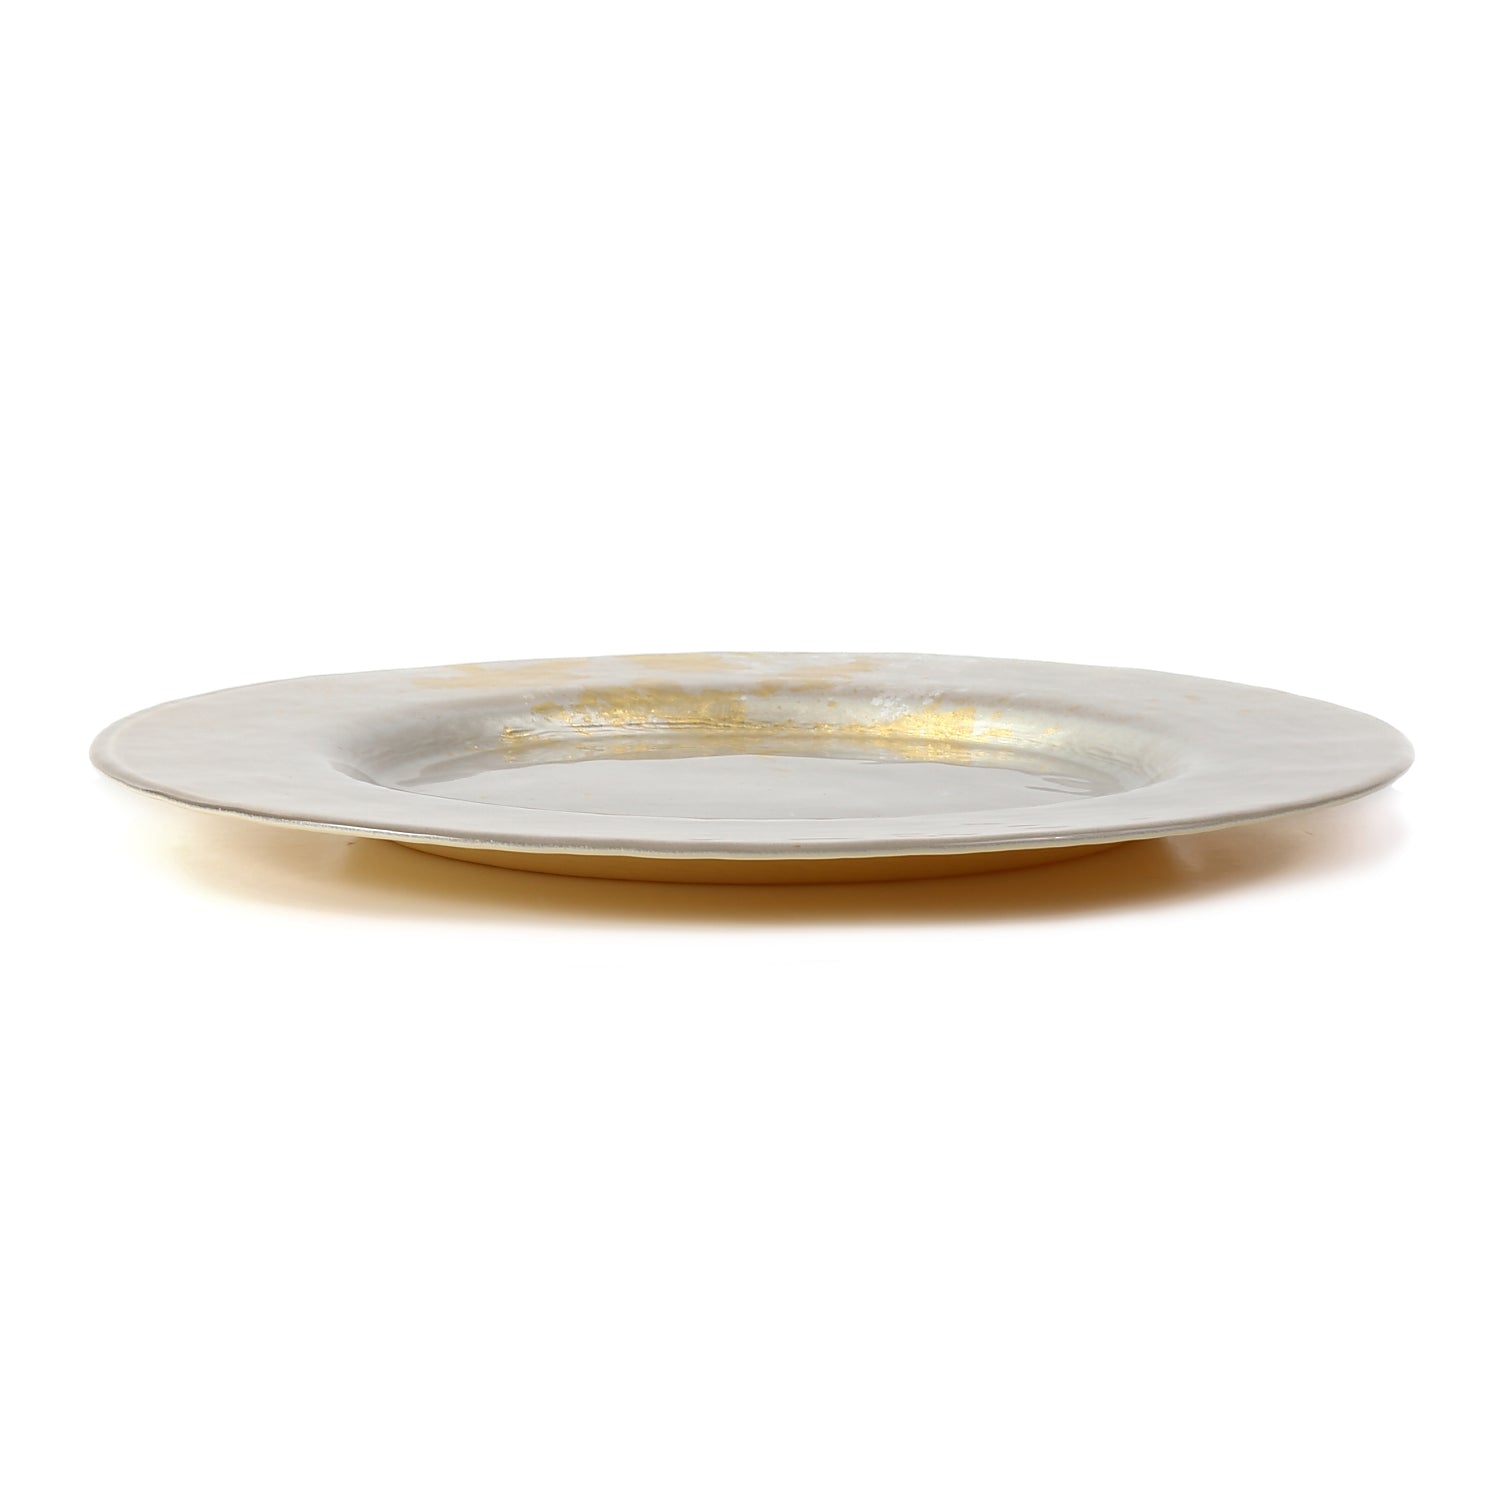 Syosaku Japanese Urushi Glass Dinner Plate 12.5-inch (32cm) Majestic White with Gold Leaf, Dishwasher Safe - Syosaku-Japan